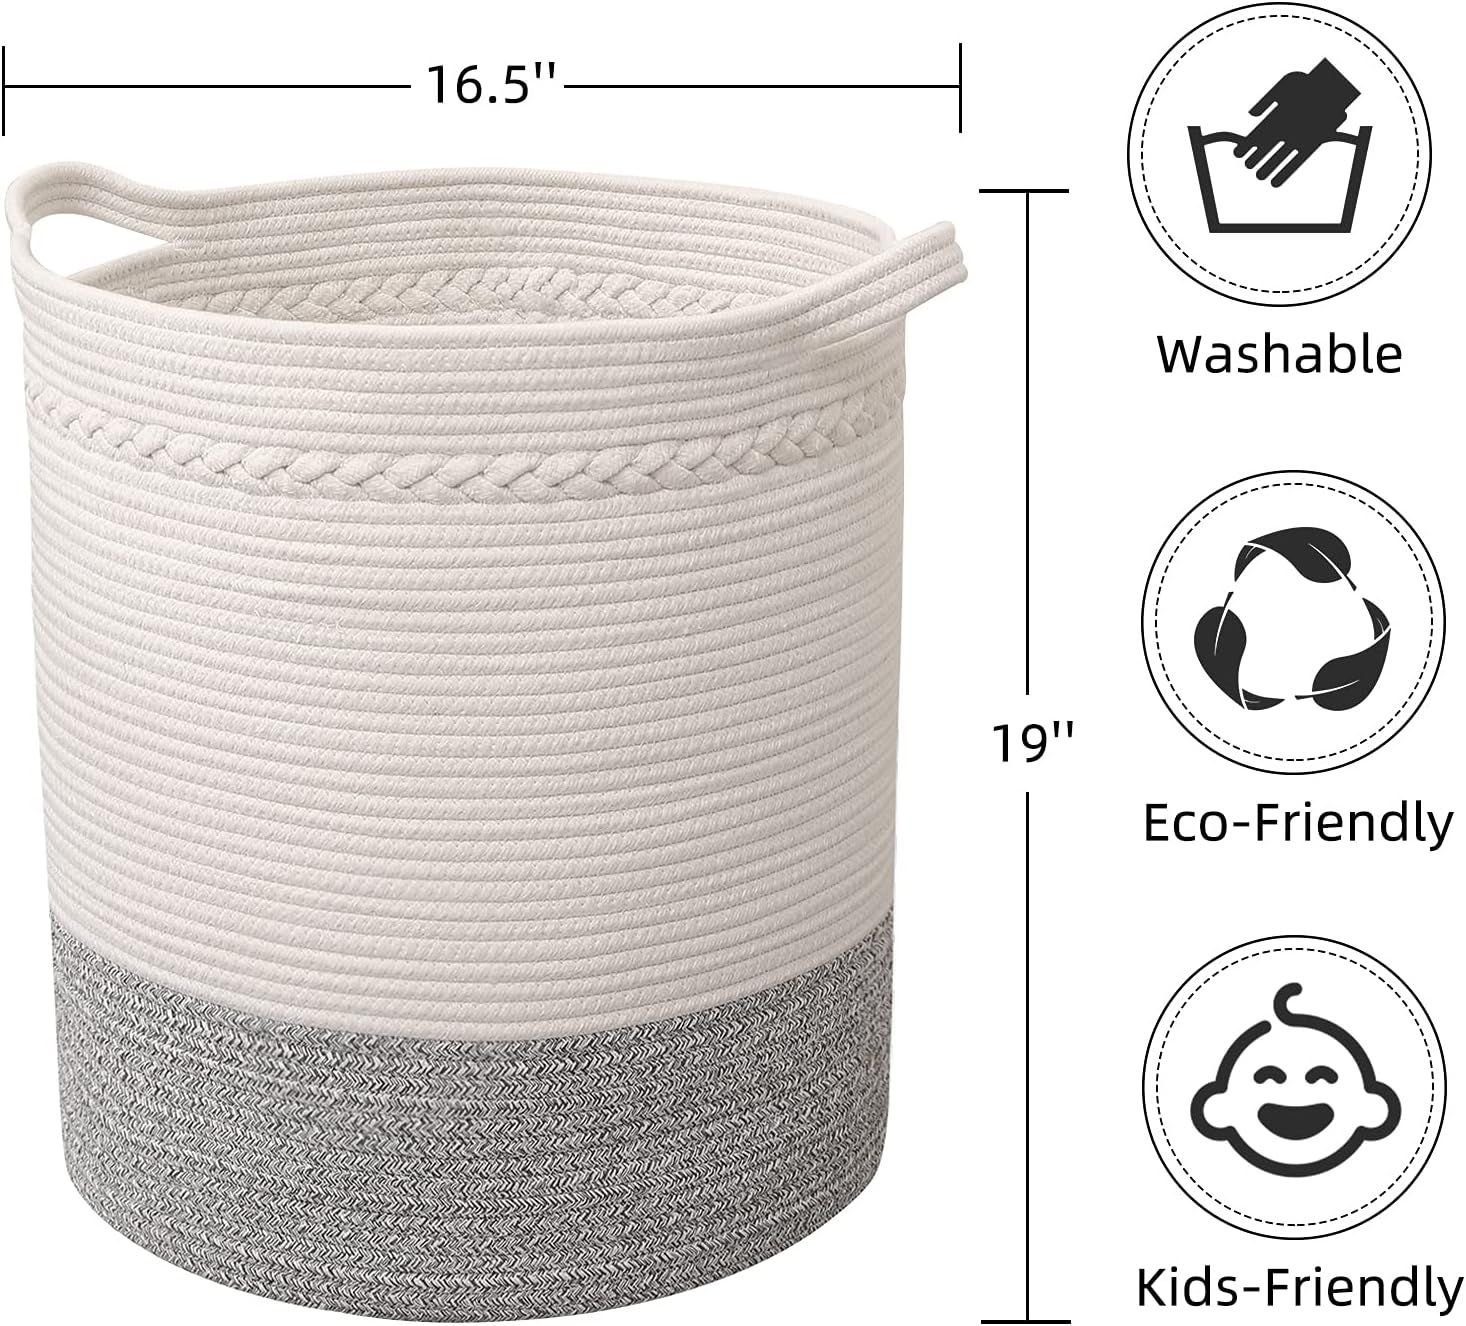 childishness ndup Woven Basket Rope Storage Basket Laundry Basket - Large Cotton Organizer 16.5" ... | Amazon (US)